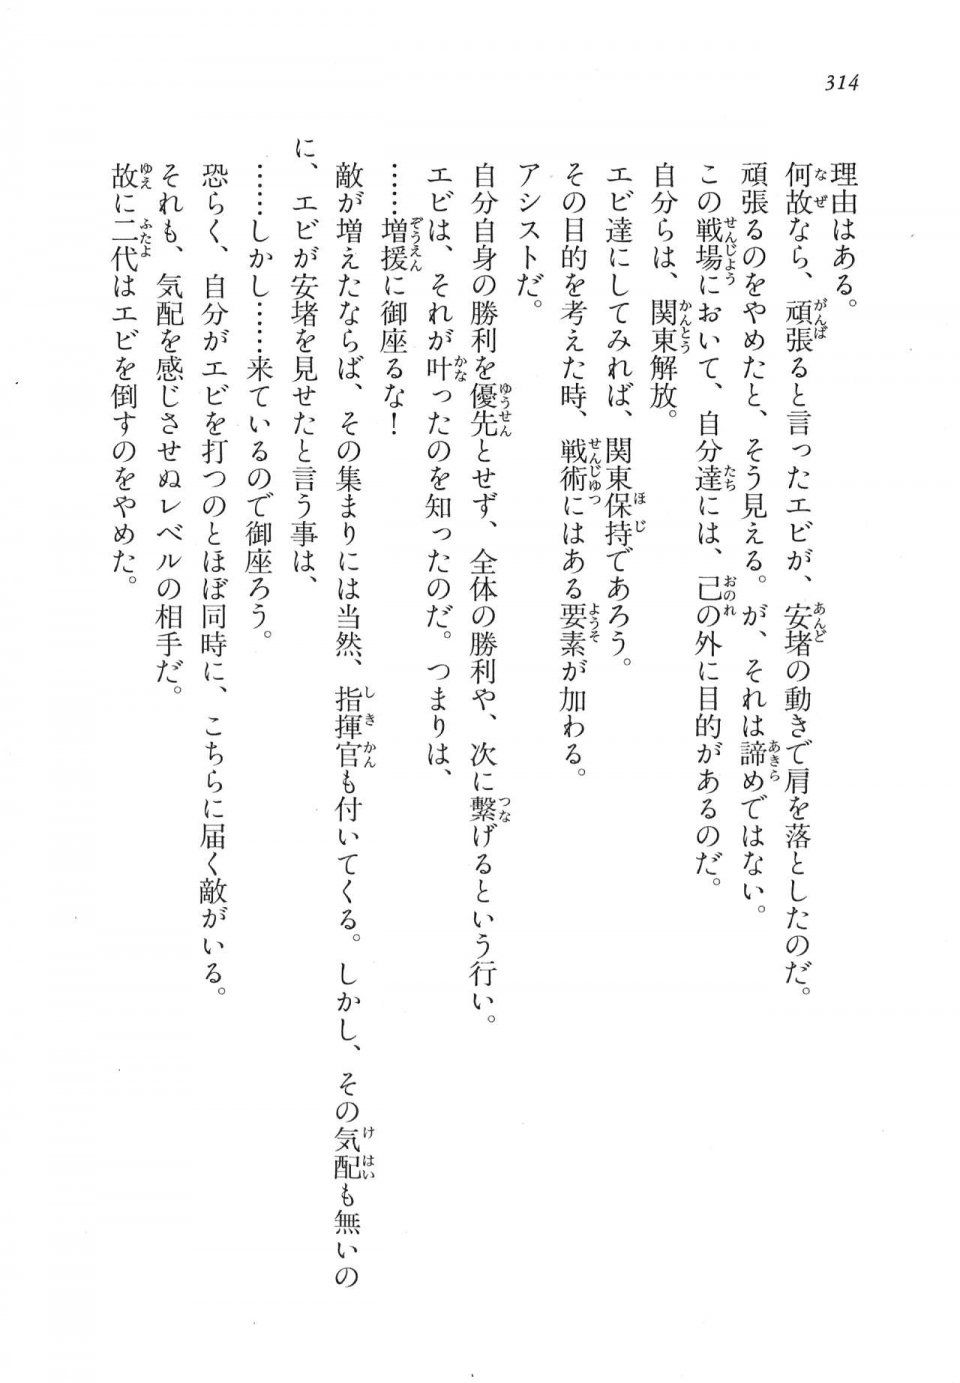 Kyoukai Senjou no Horizon LN Vol 17(7B) - Photo #314